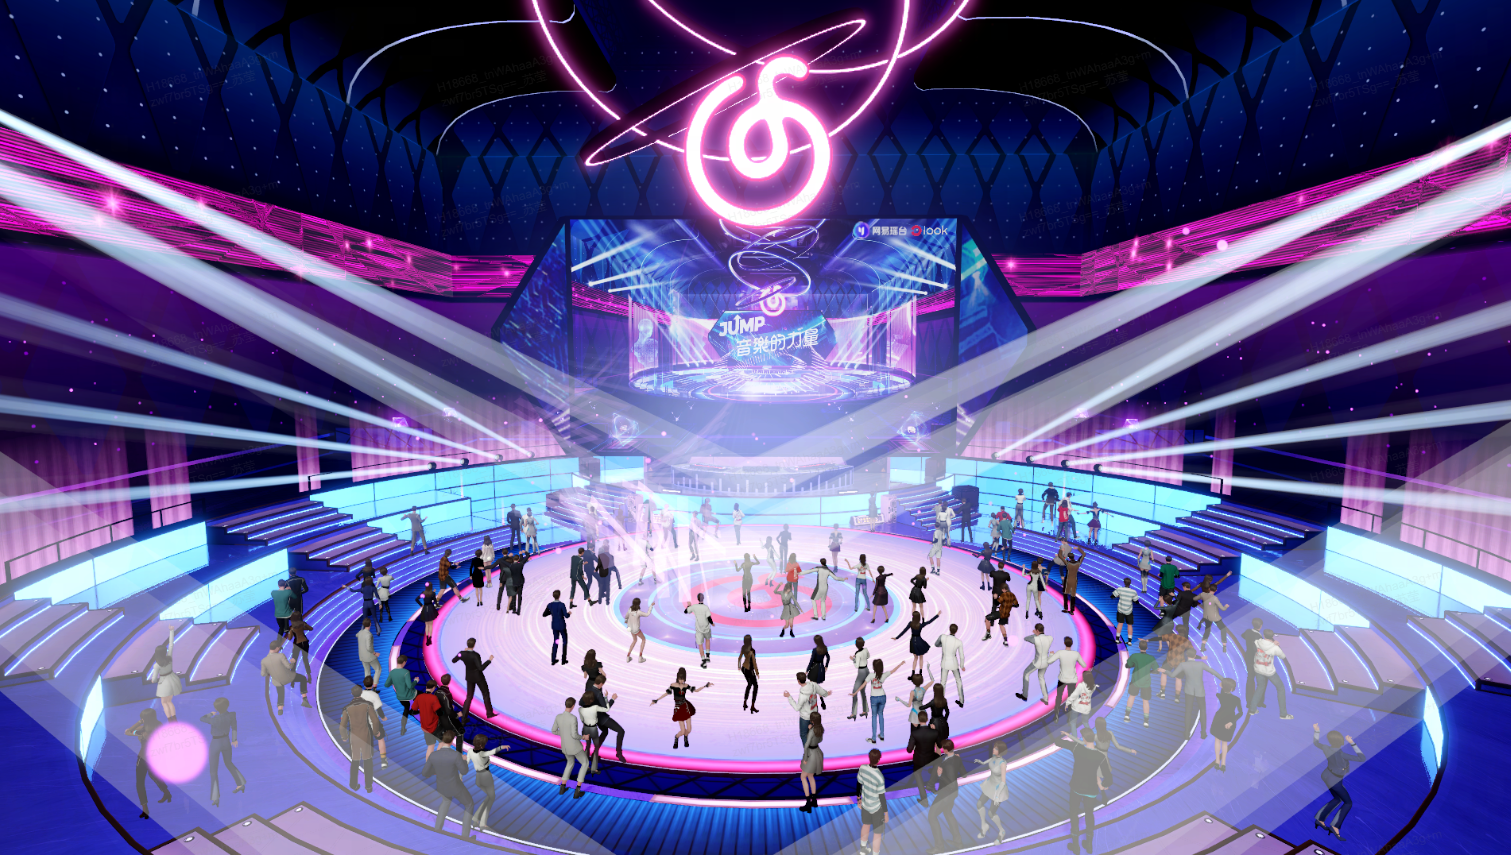 这是一张描绘未来风格滑冰场的插画，中心有人群滑冰，四周是霓虹灯饰，上方有大型显示屏和装饰性图案。